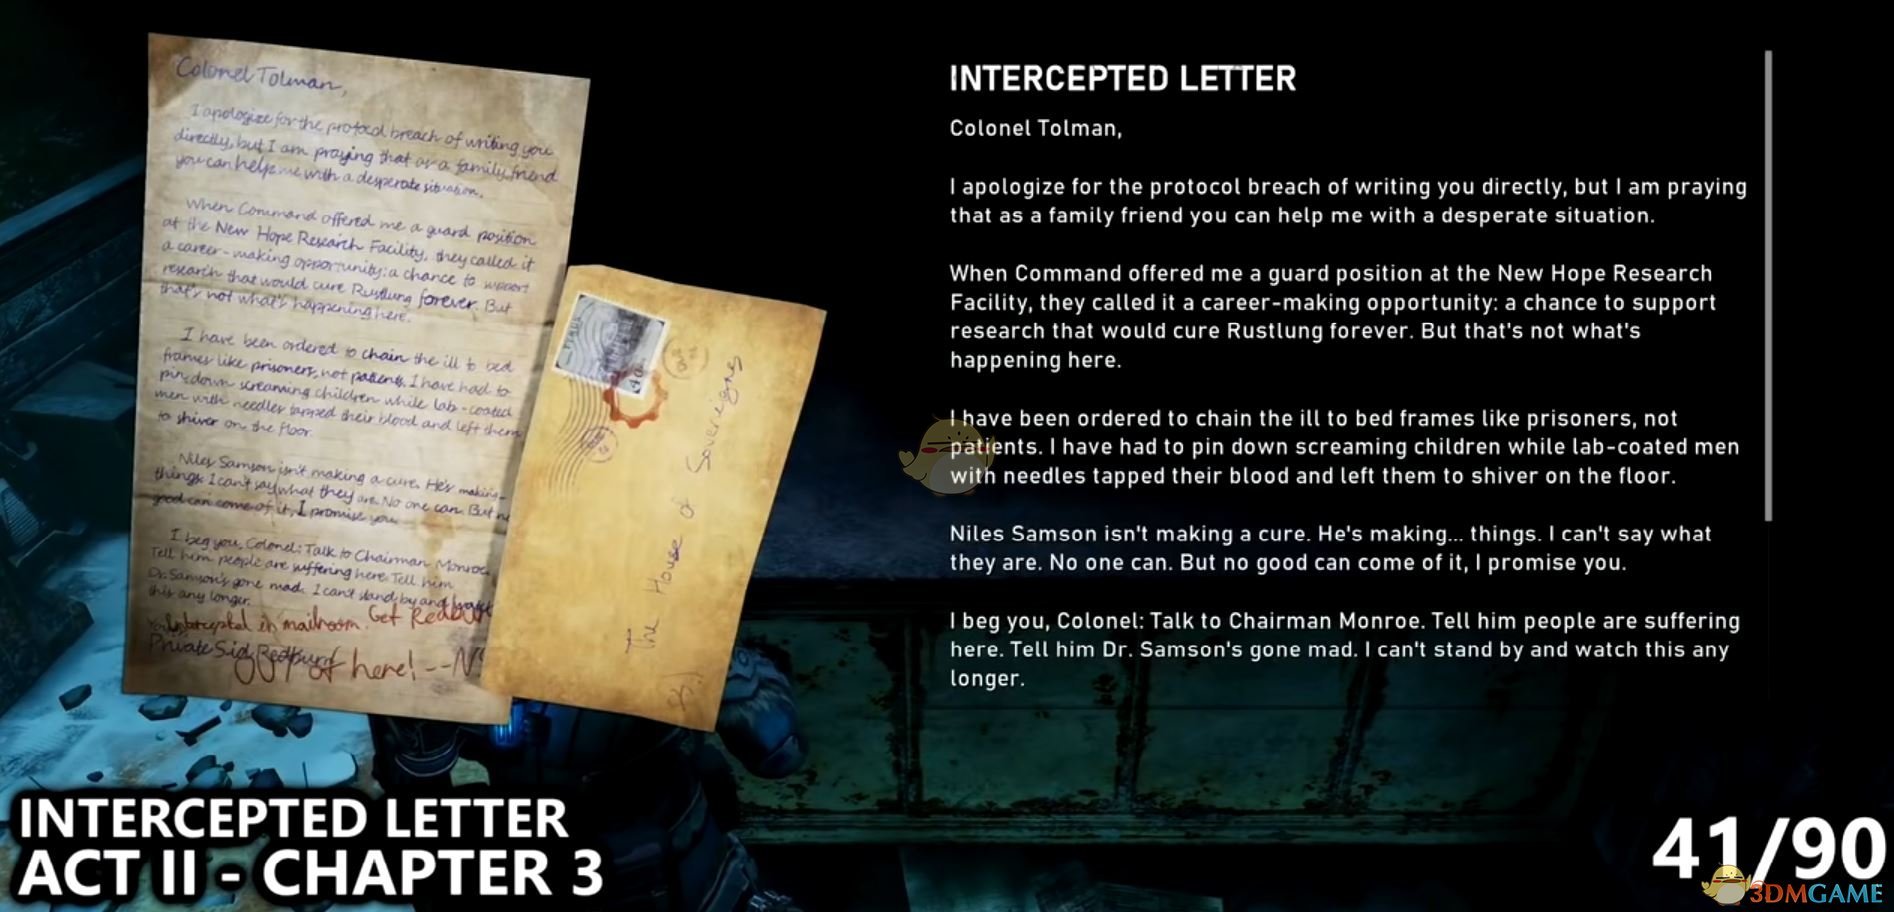 《戰爭機器5》被攔截的信背後故事介紹